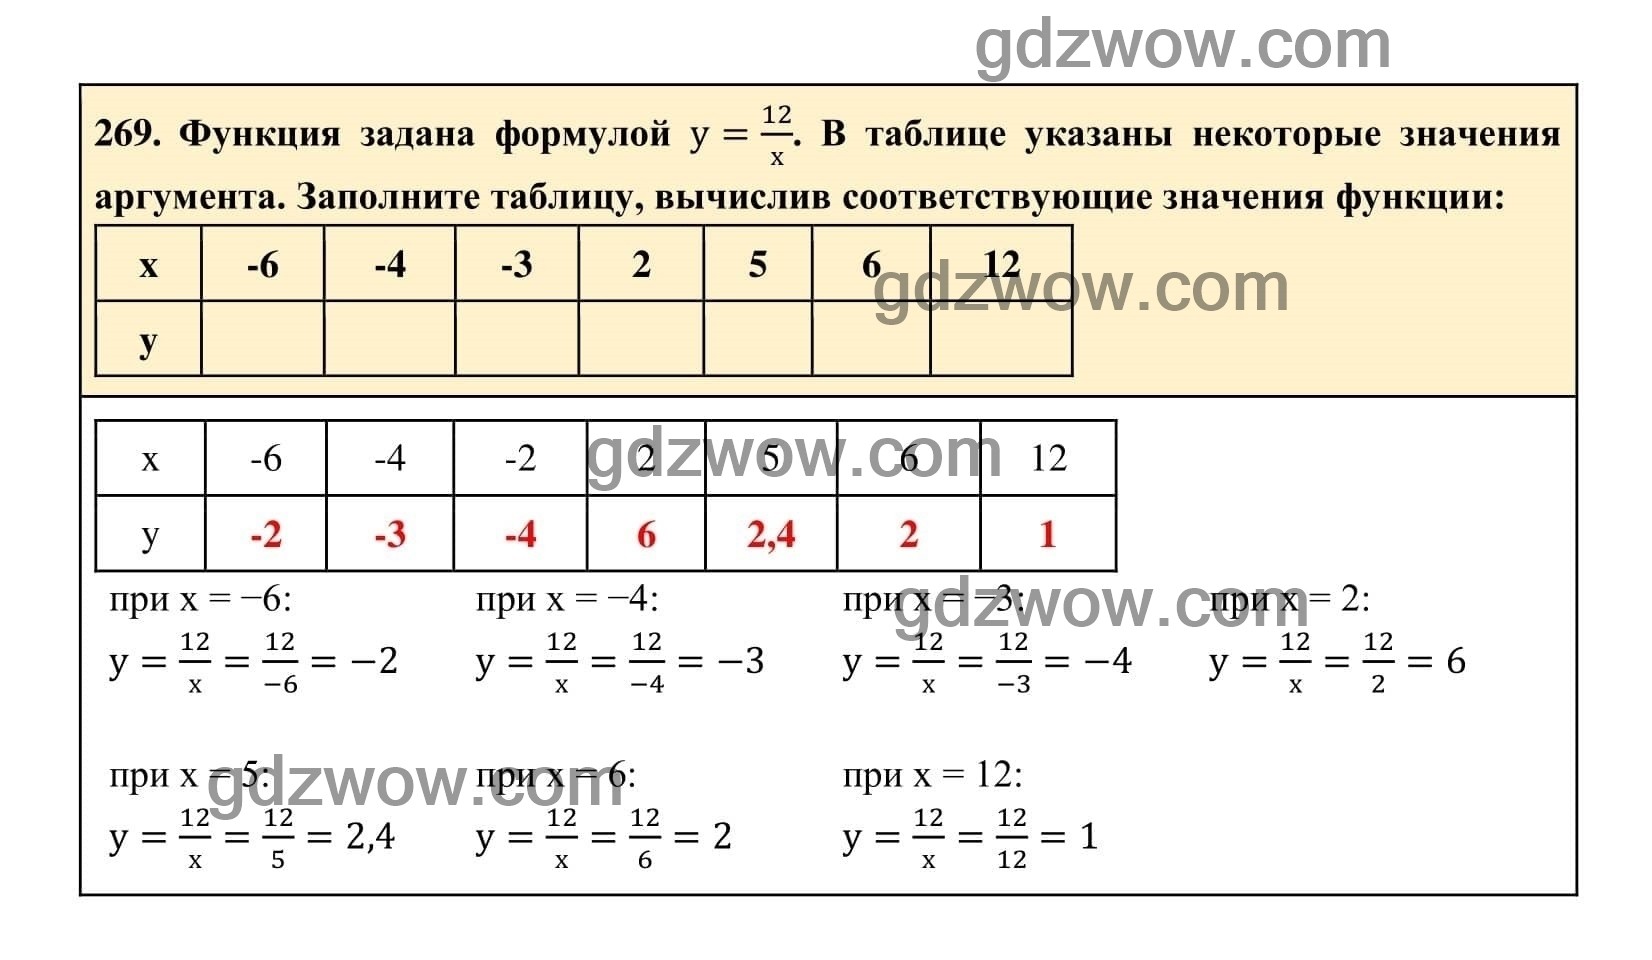 Упражнение 269 - ГДЗ по Алгебре 7 класс Учебник Макарычев (решебник) - GDZwow